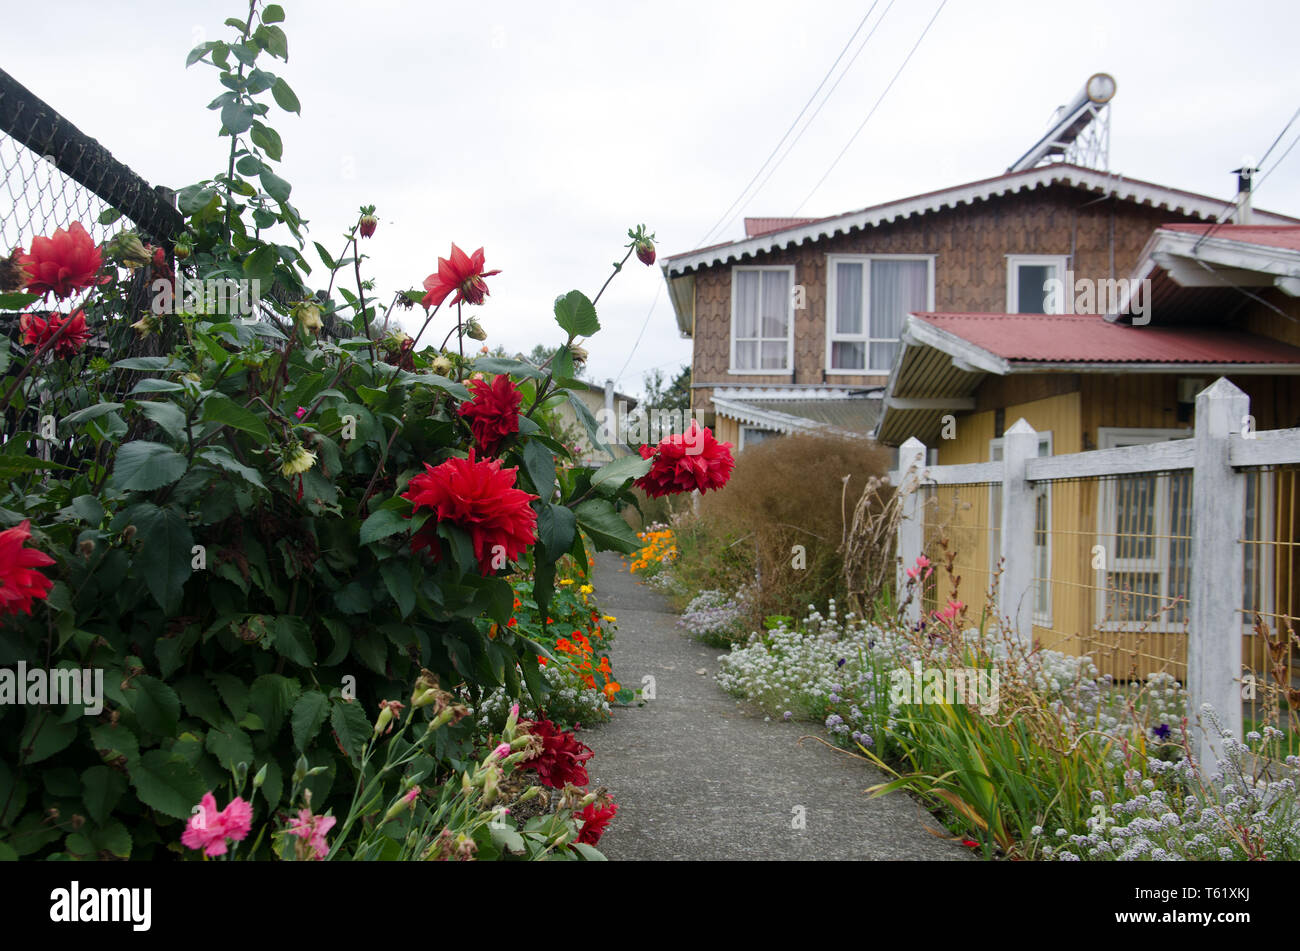 En la isla de Chiloé, Chile, se ha dicho que la lluvia los 300 días del año, por lo que no hay problema regar este propietario jardín repleto de flores Foto de stock